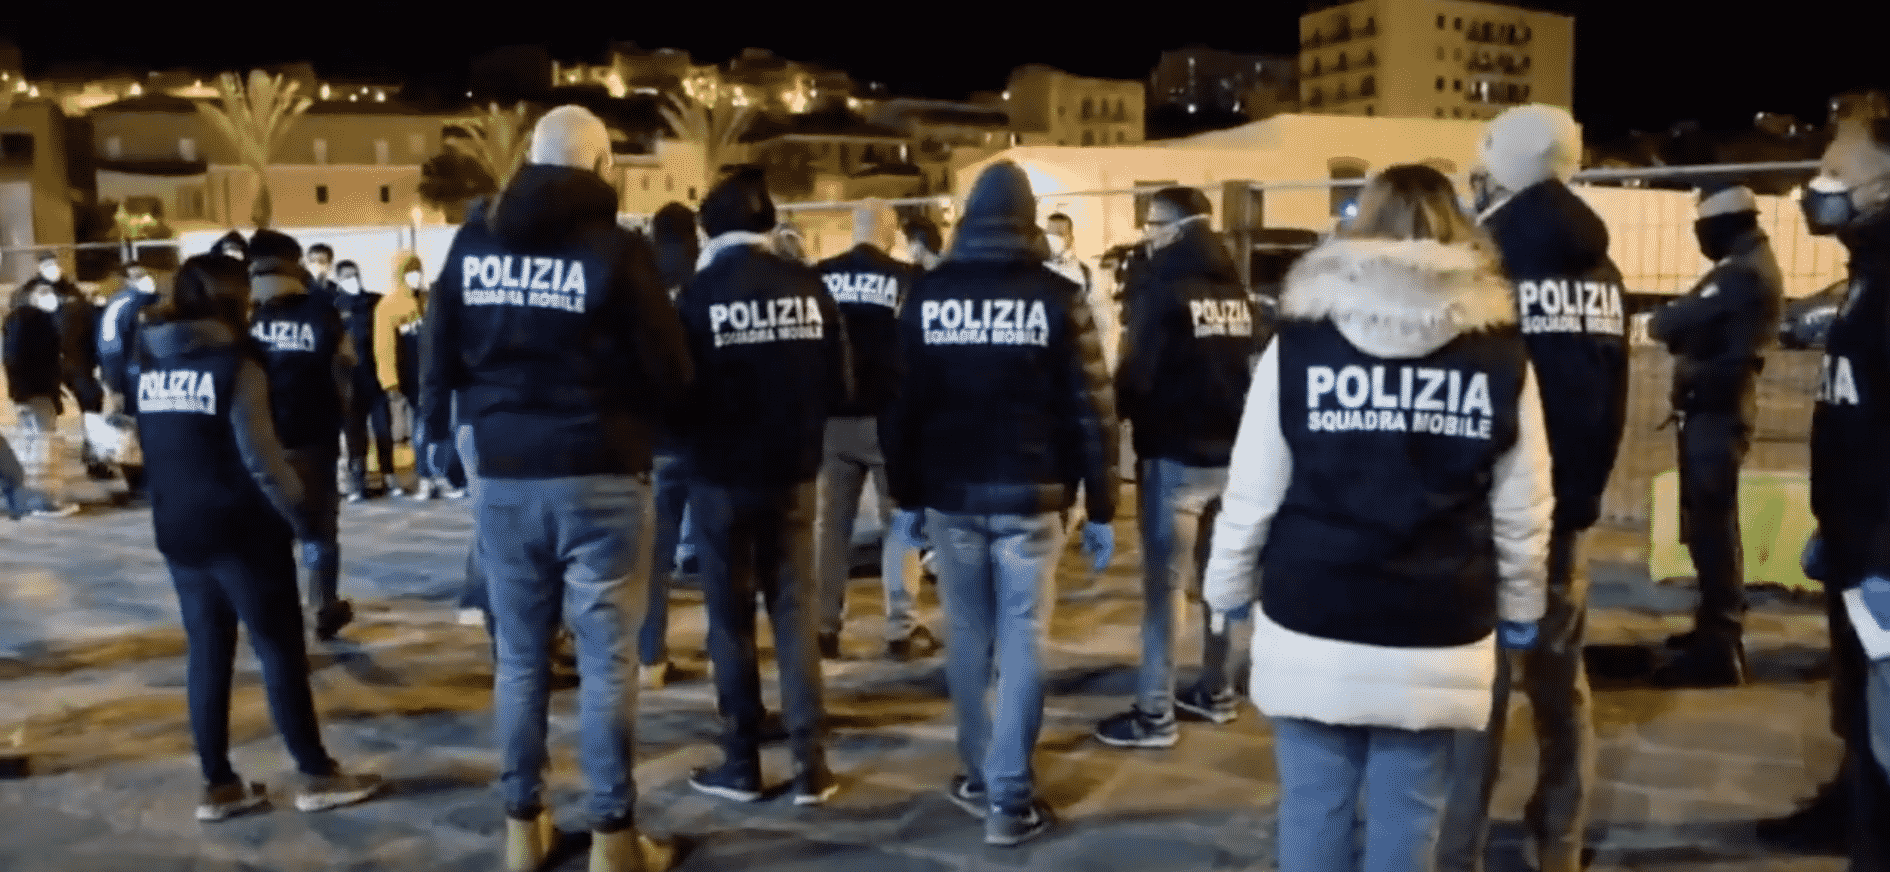 Già condannati ed espulsi, ritornano in Sicilia: arrestati sei migranti